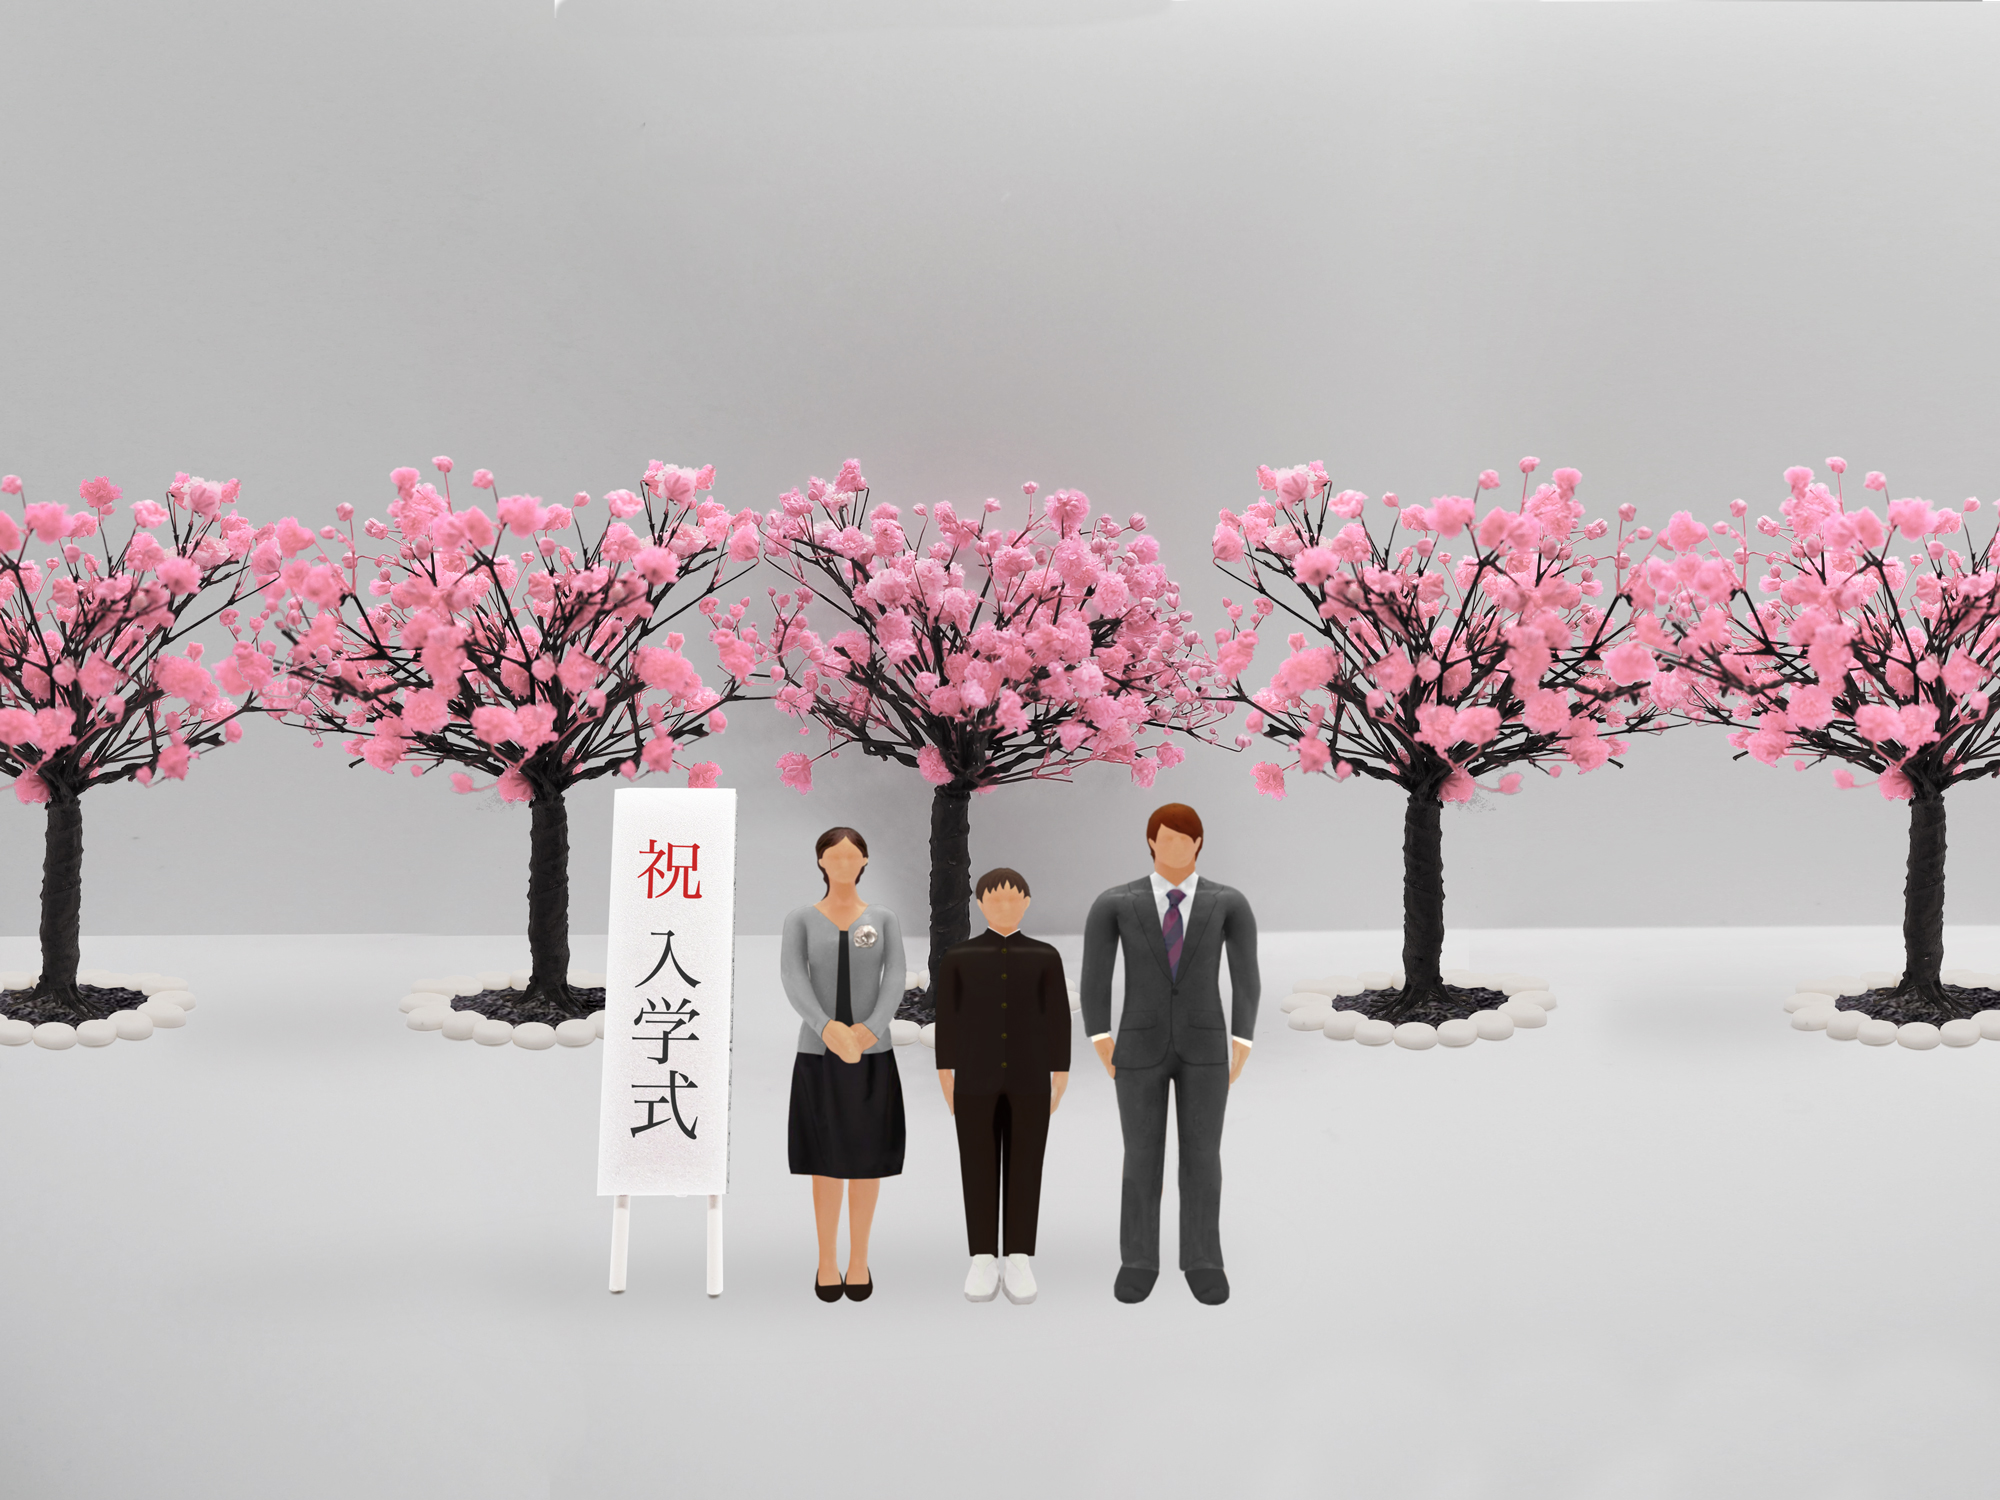 中学校の入学式で桜の木の前で撮影している家族のイメージ